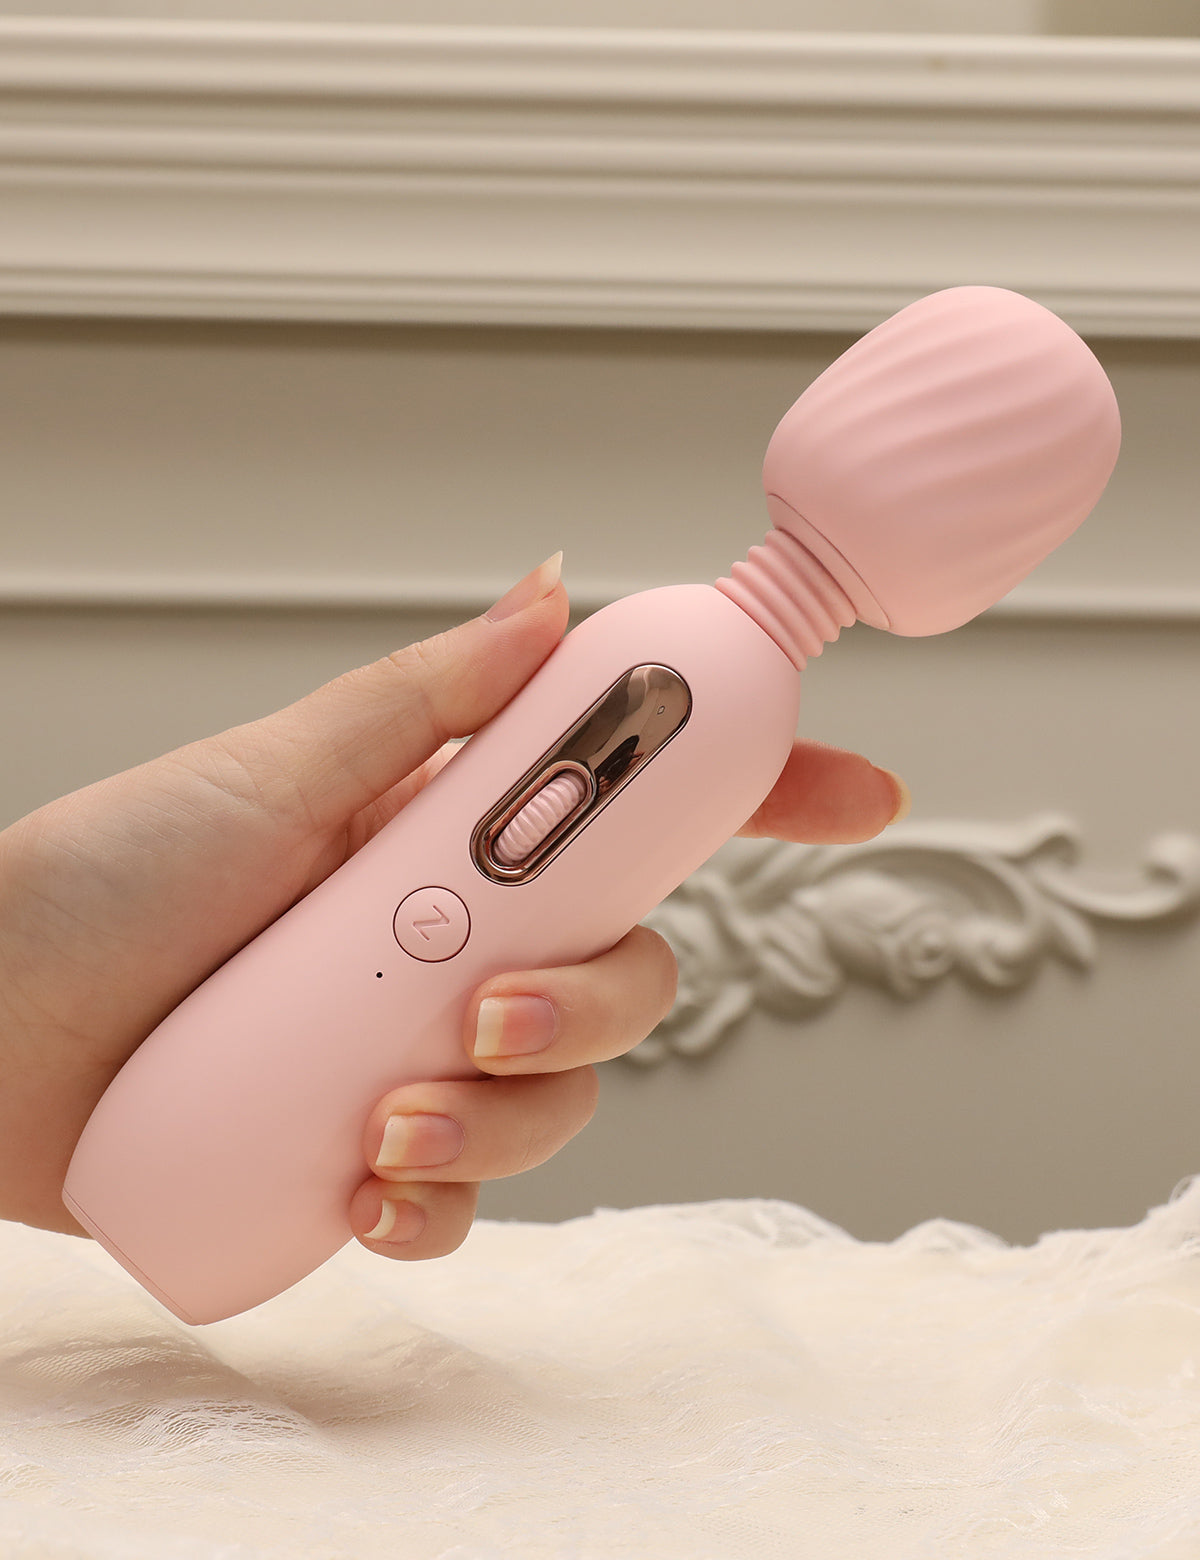 ZEMALIA 粉紅色蘑菇 超級振動電動按摩器 加熱角度調節 性玩具